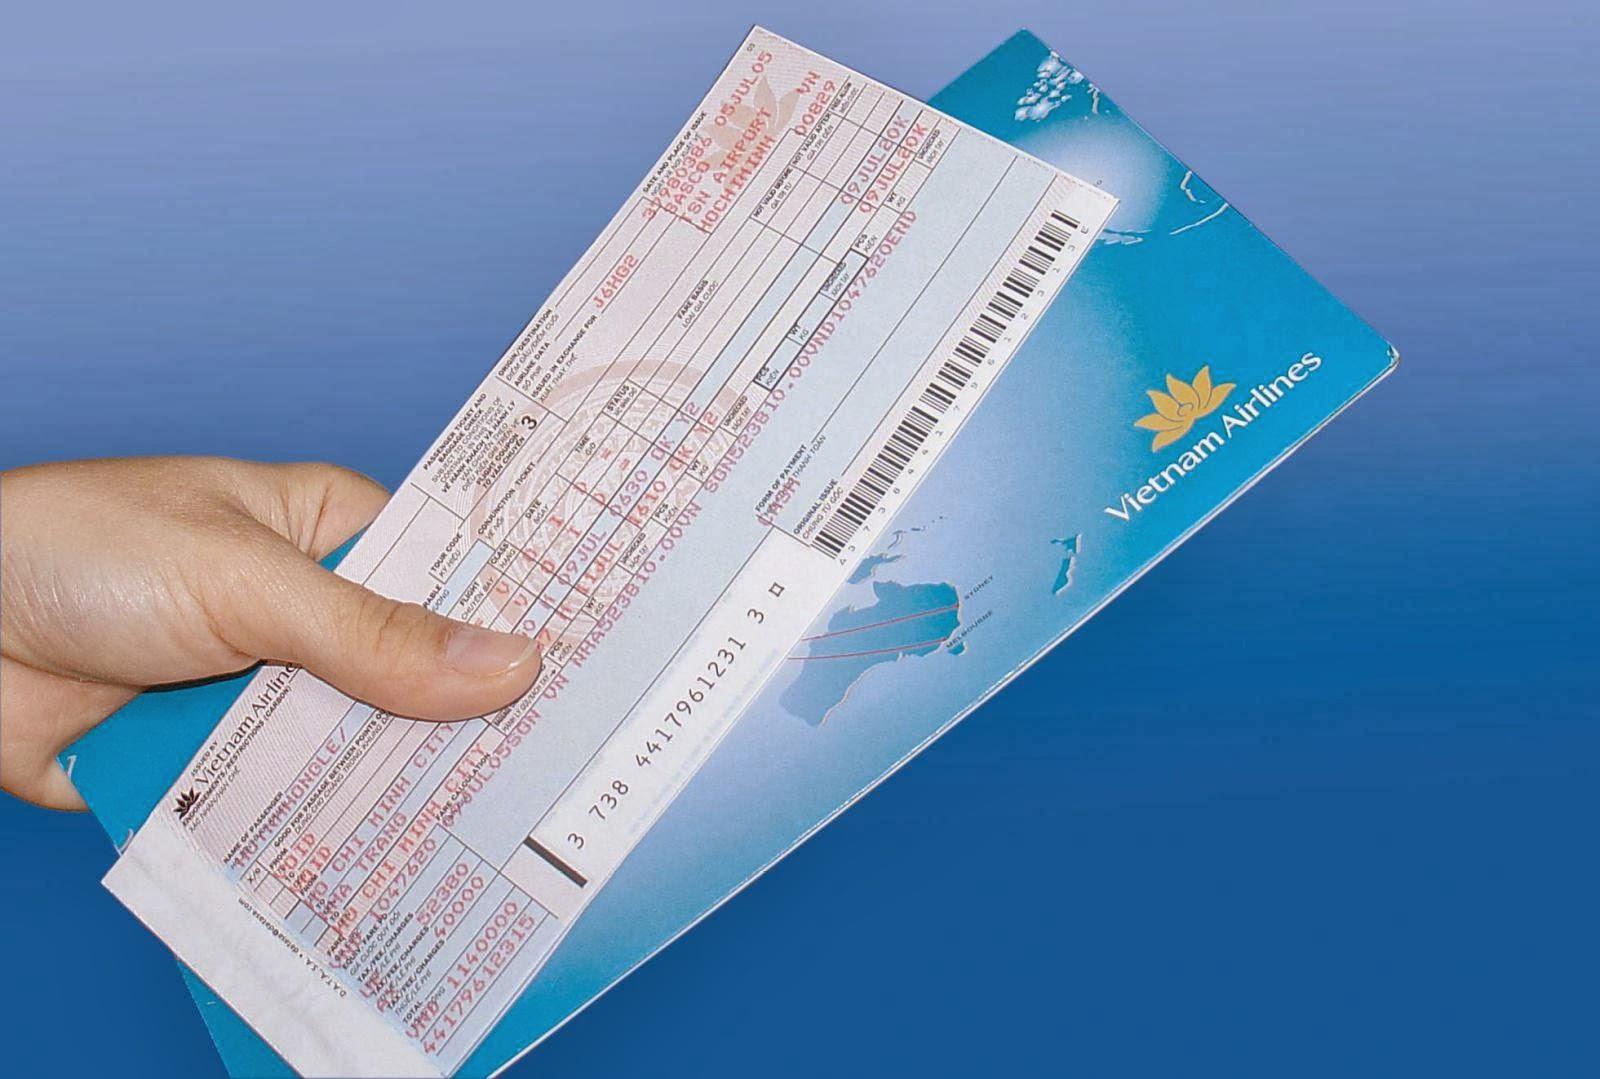 Vé máy bay cũng chính là một trong những giấy tờ quan trọng khi thực hiện chuyến bay